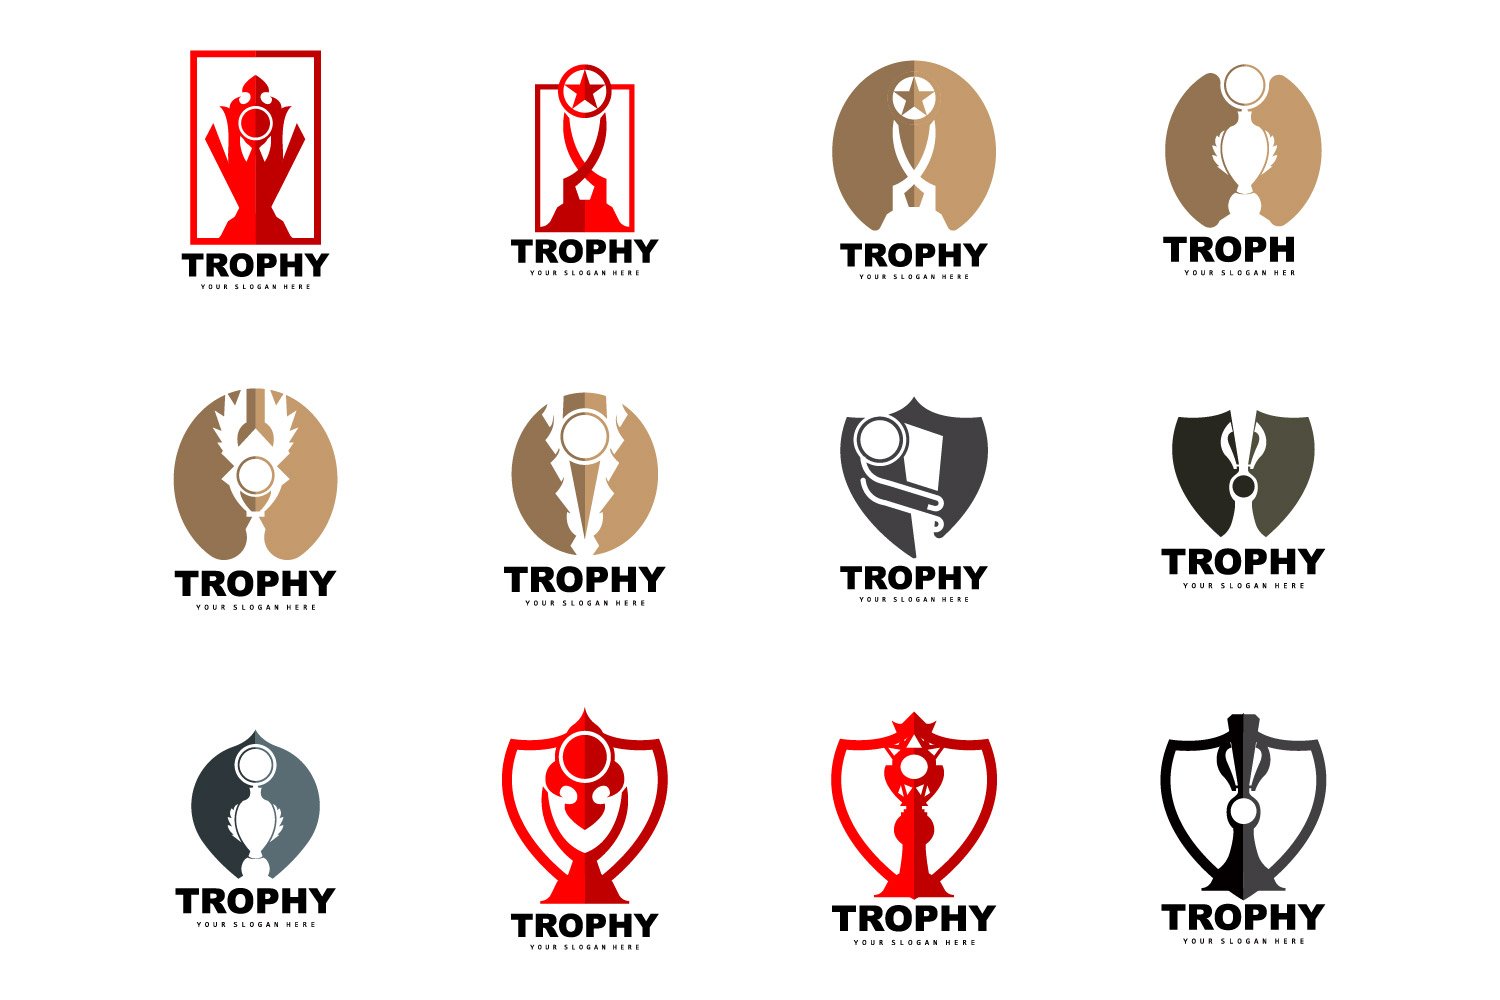 Kit Graphique #404676 Trophy Win Divers Modles Web - Logo template Preview